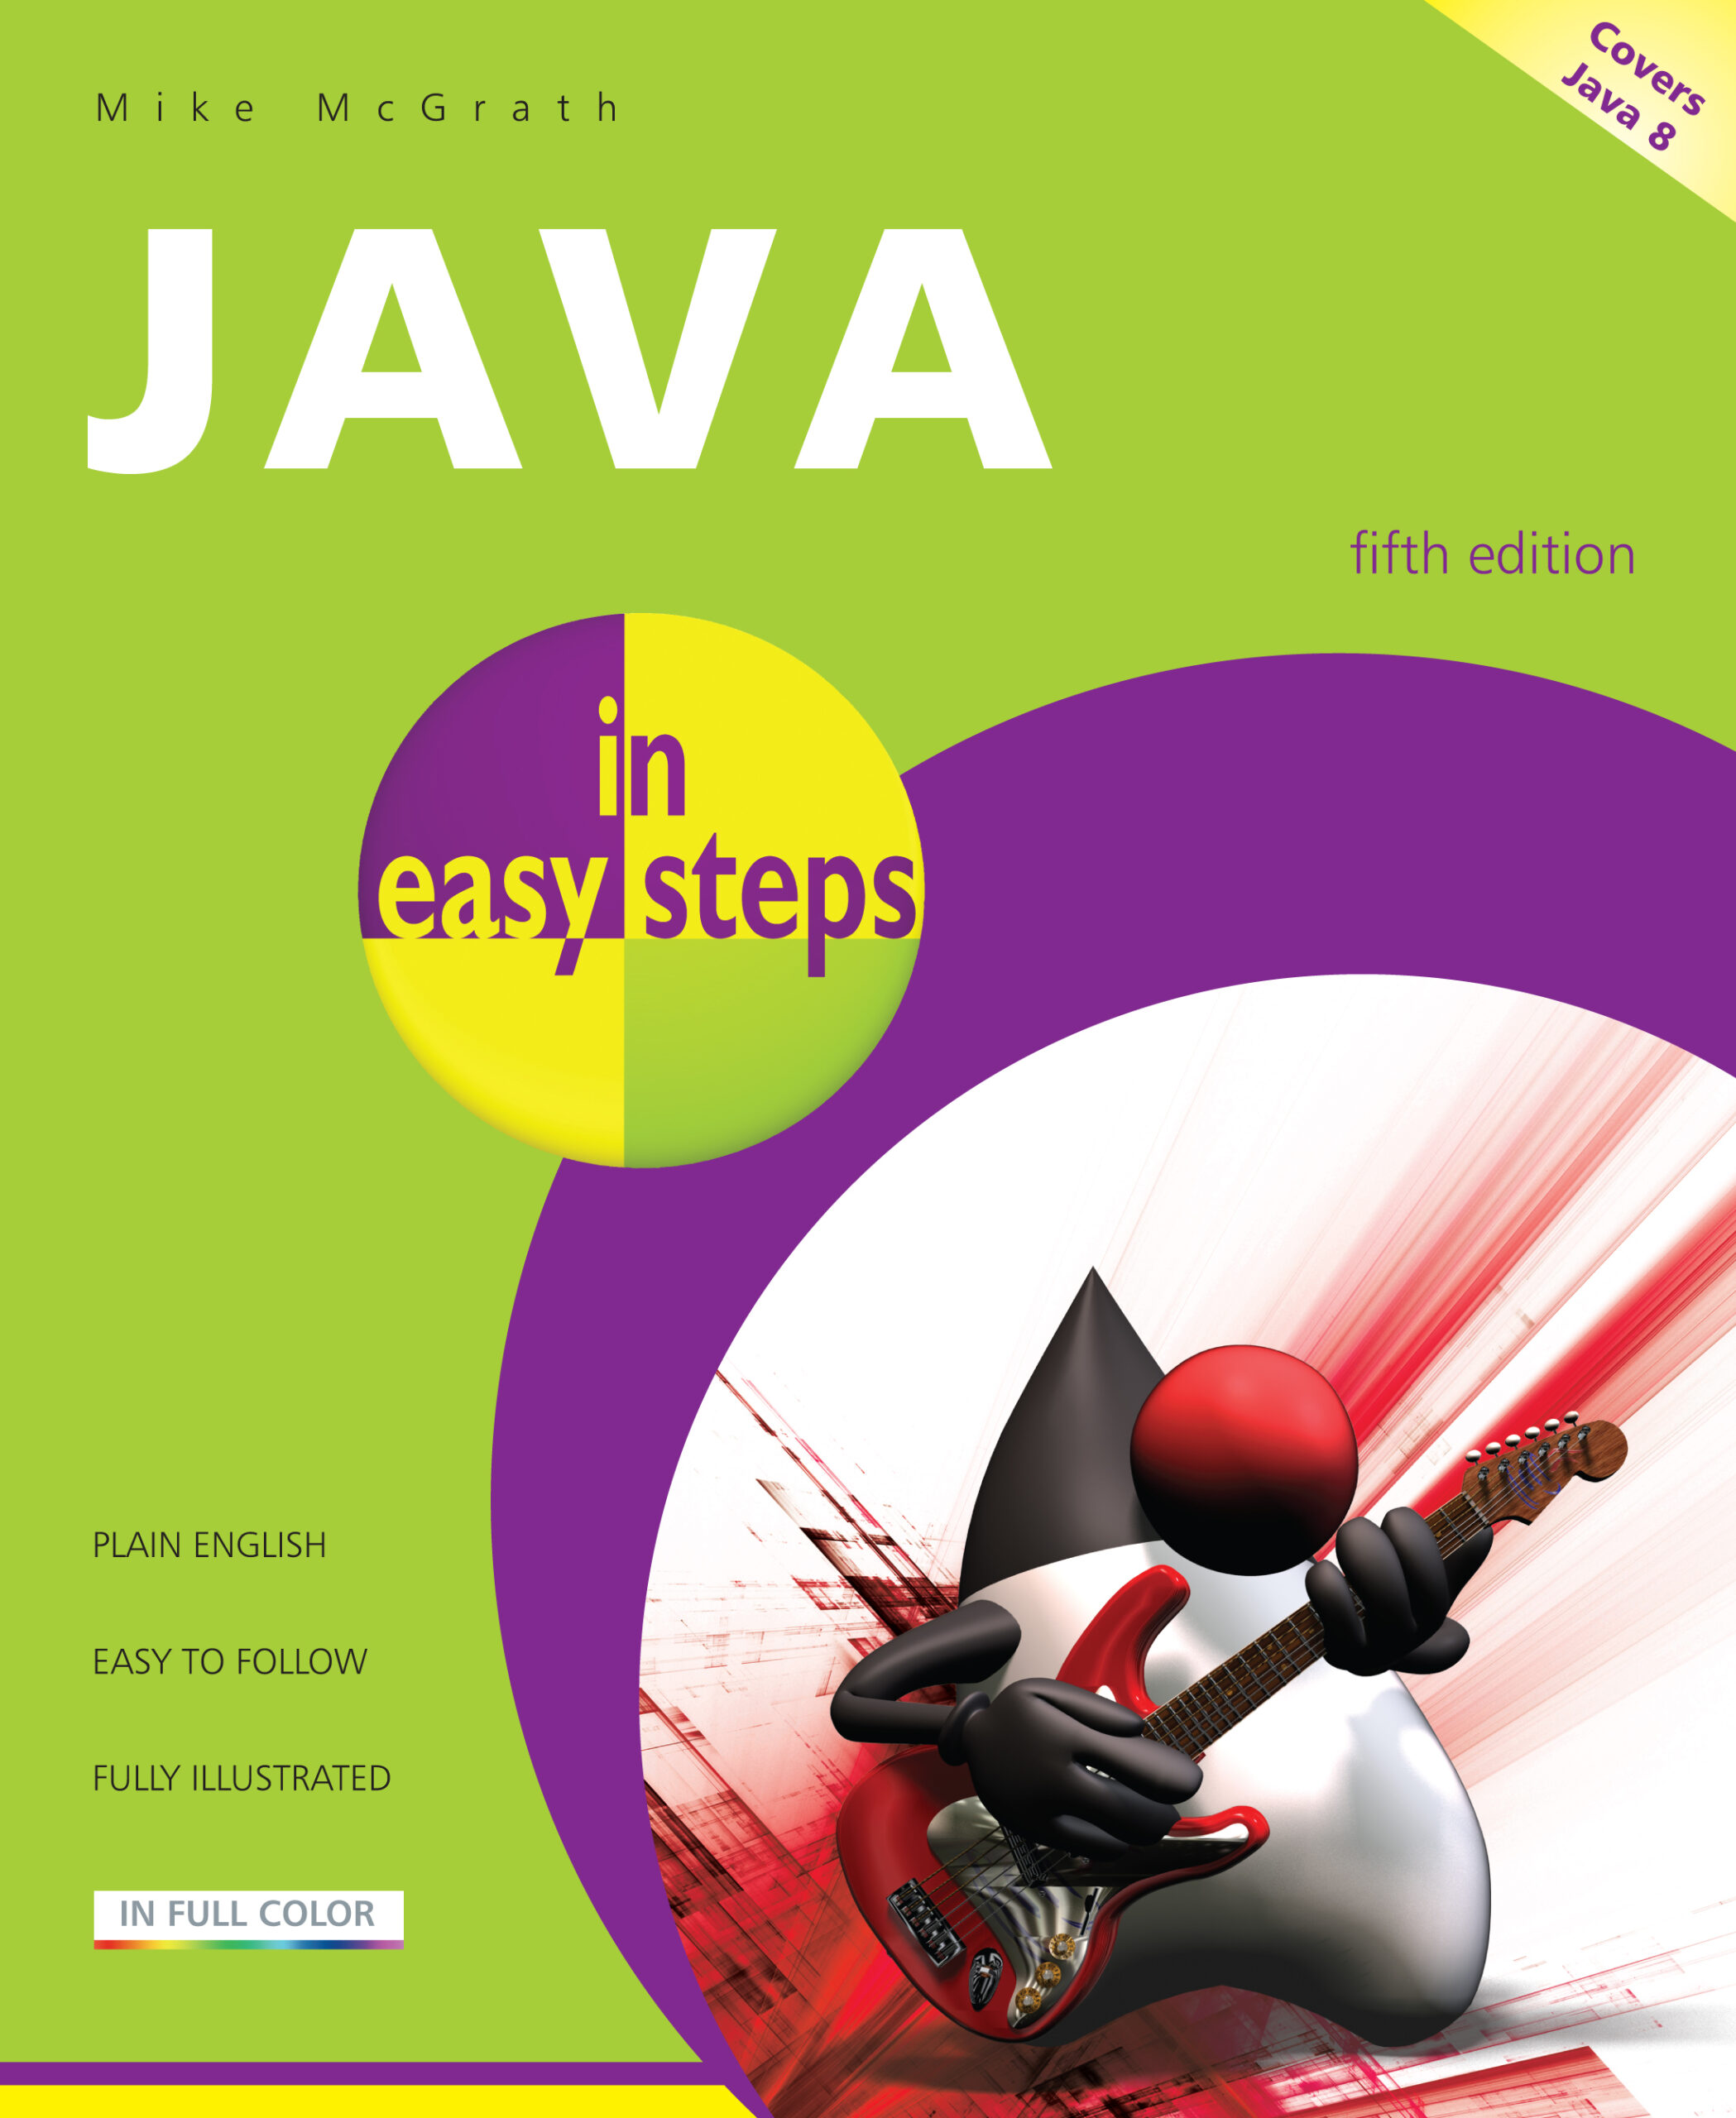 Книга "java для всех". Майк МАКГРАТ java программирование для начинающих. Java books обложки. Java 8 книга. Java полное издание